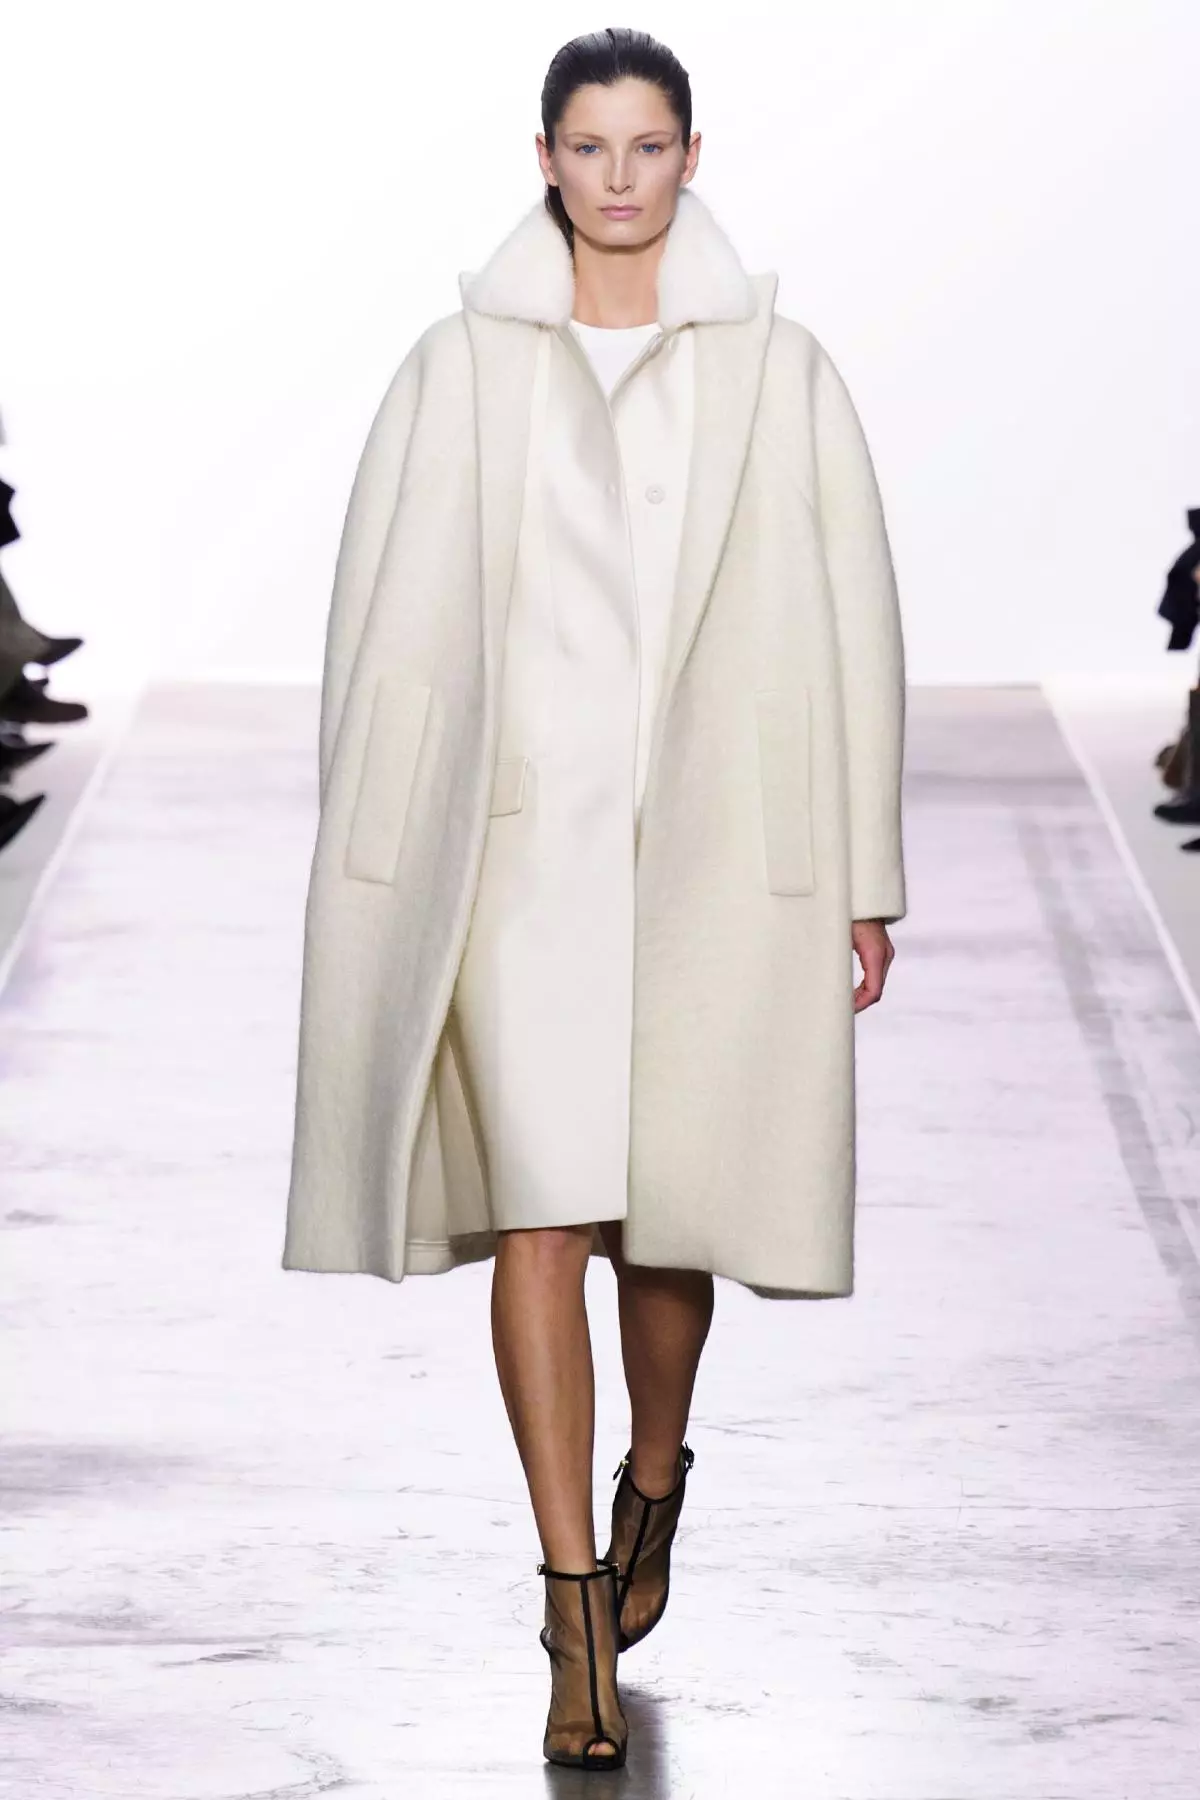 Naisten White Coat (183 kuvaa): Lyhyt, Mango, Valko-Venäjä, kuinka puhdistaa takki, pitkä, huivi valkoinen takki, hupullinen 583_114